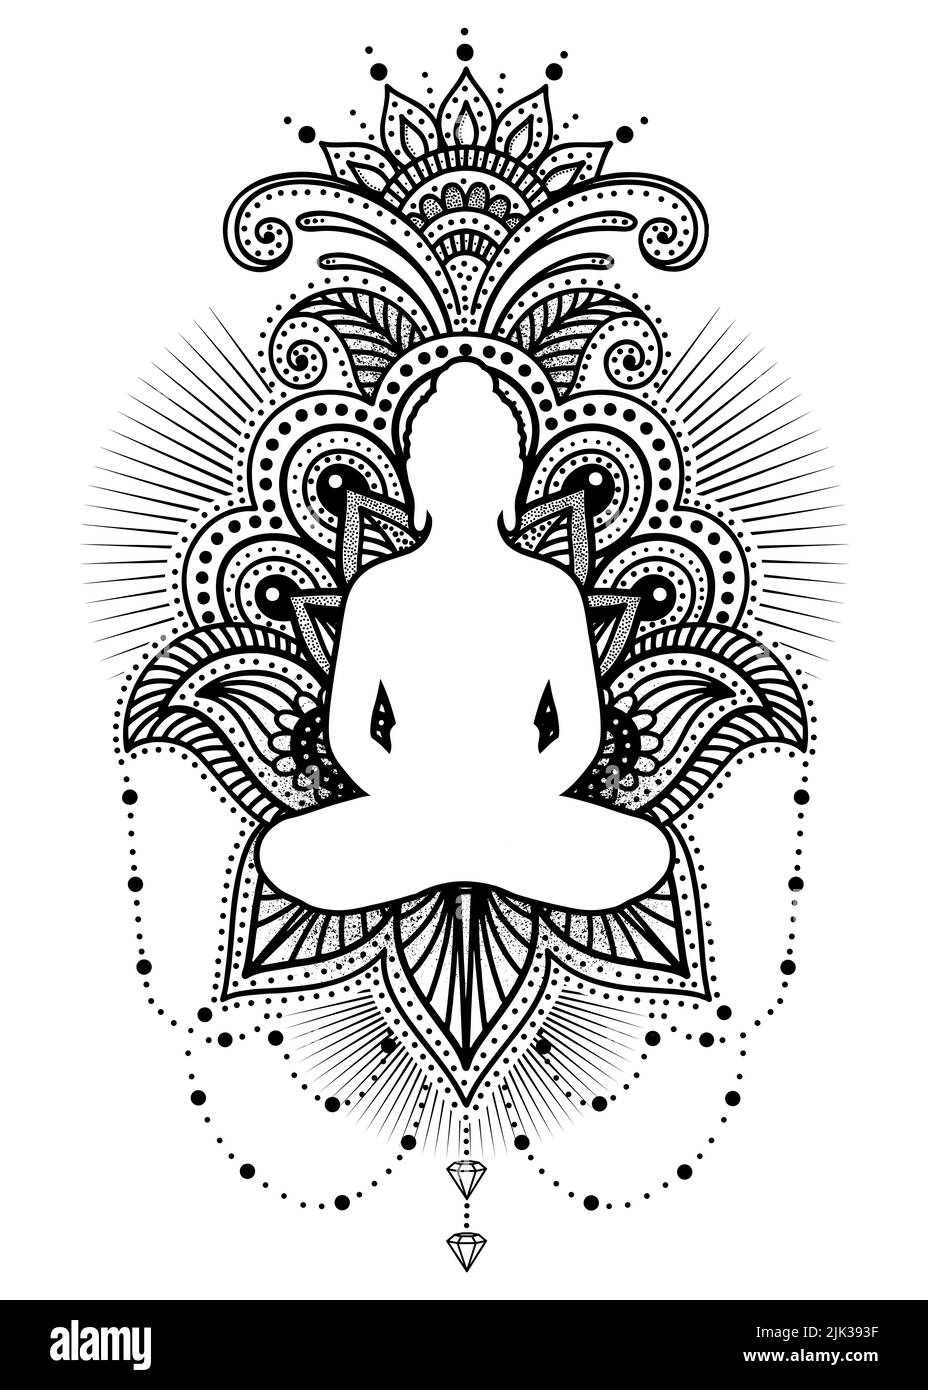 Yoga Buddha - disegno di meditazione spirituale Foto Stock